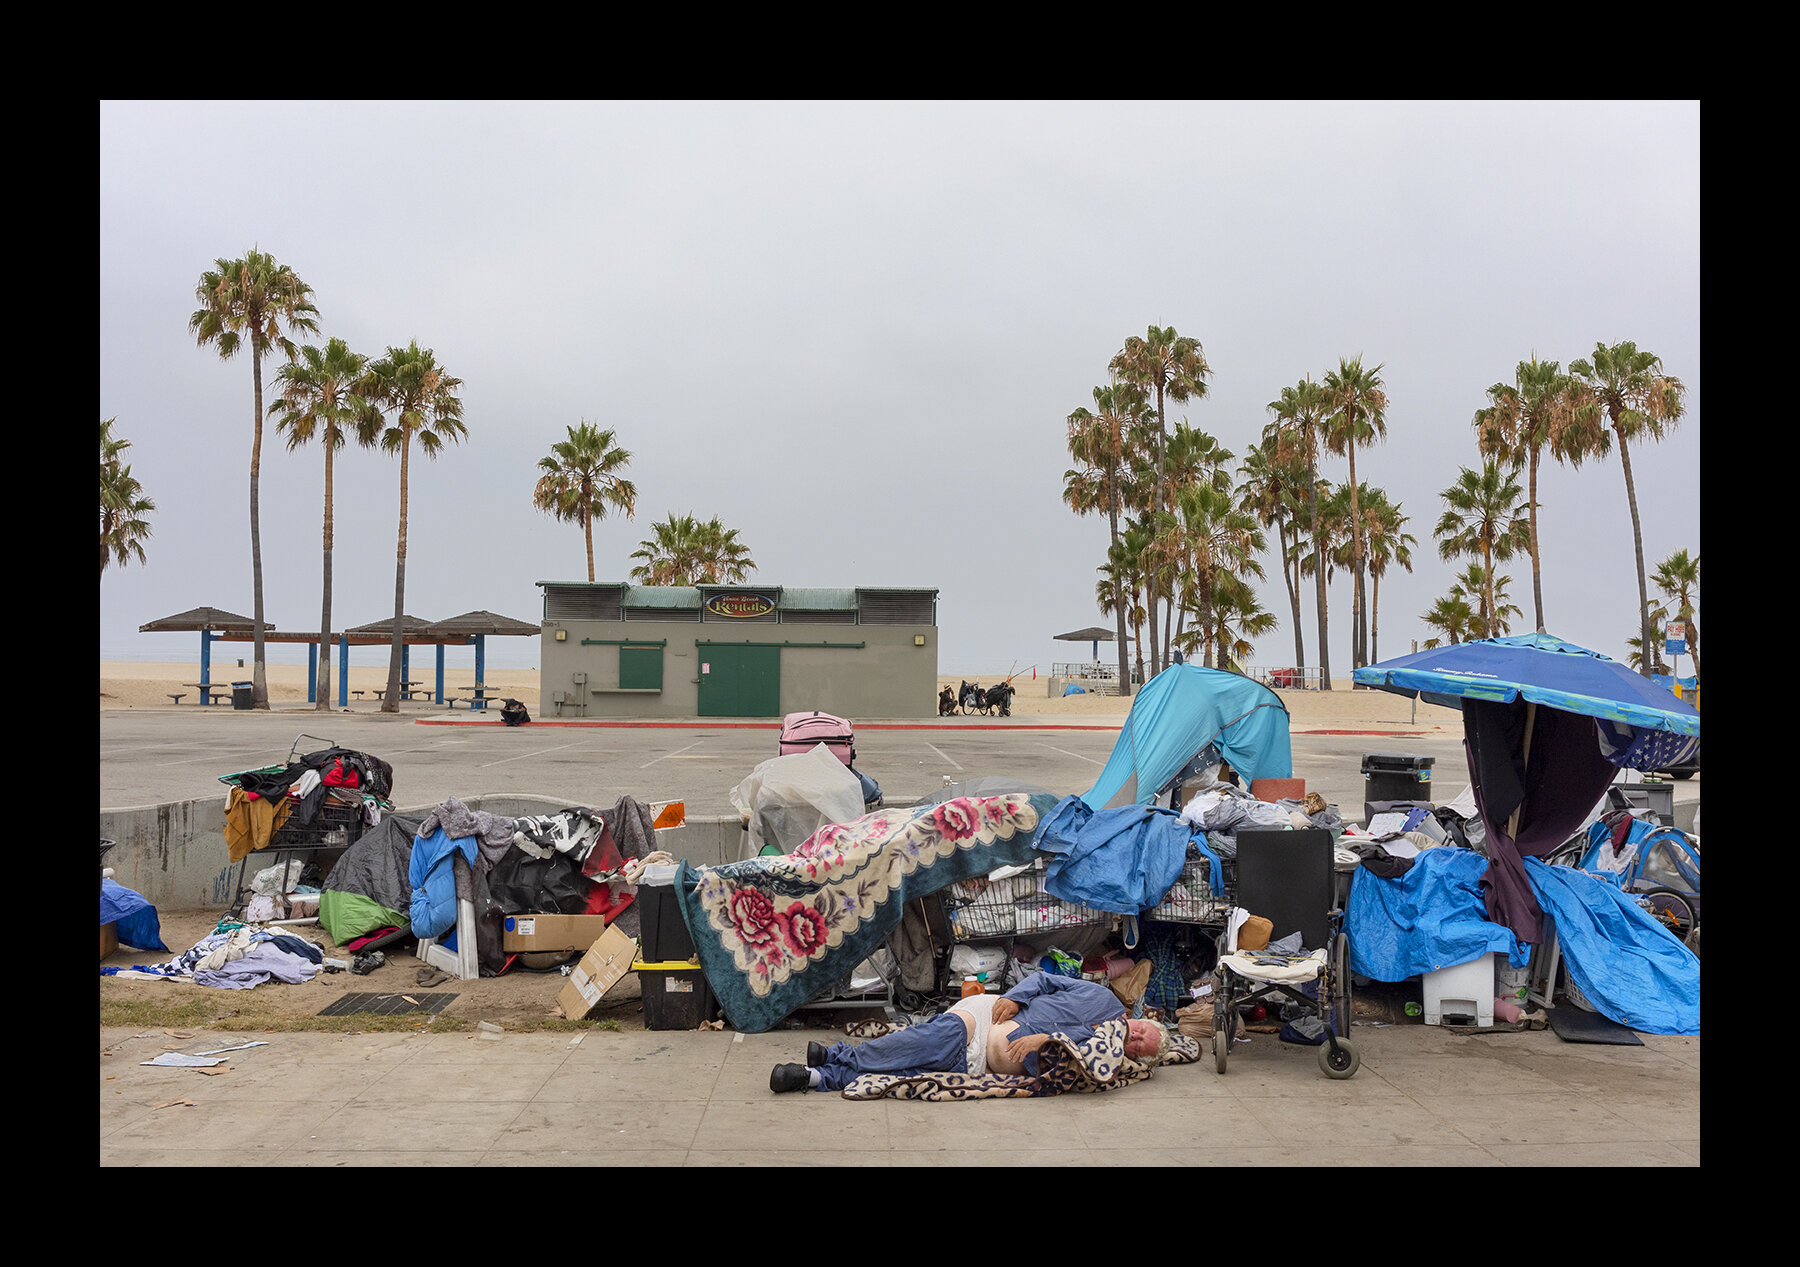  Homeless enclave on Venice Beach, California. 